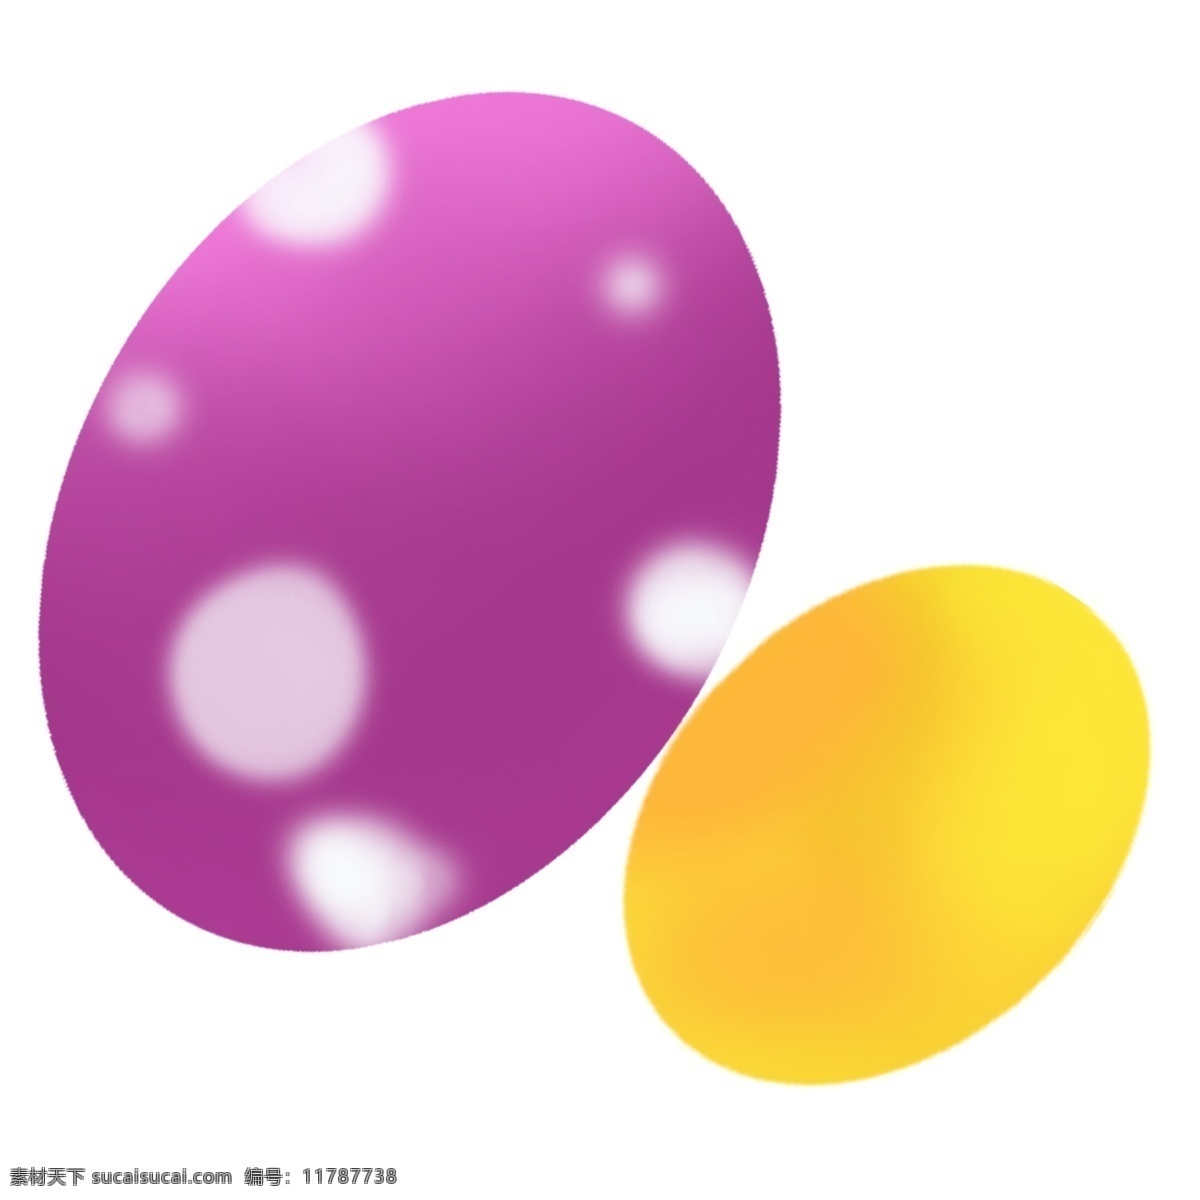 卡通 手绘 节日 线条 彩蛋 元素 png元素 免抠元素 节日线条彩蛋 装饰素材 透明素材